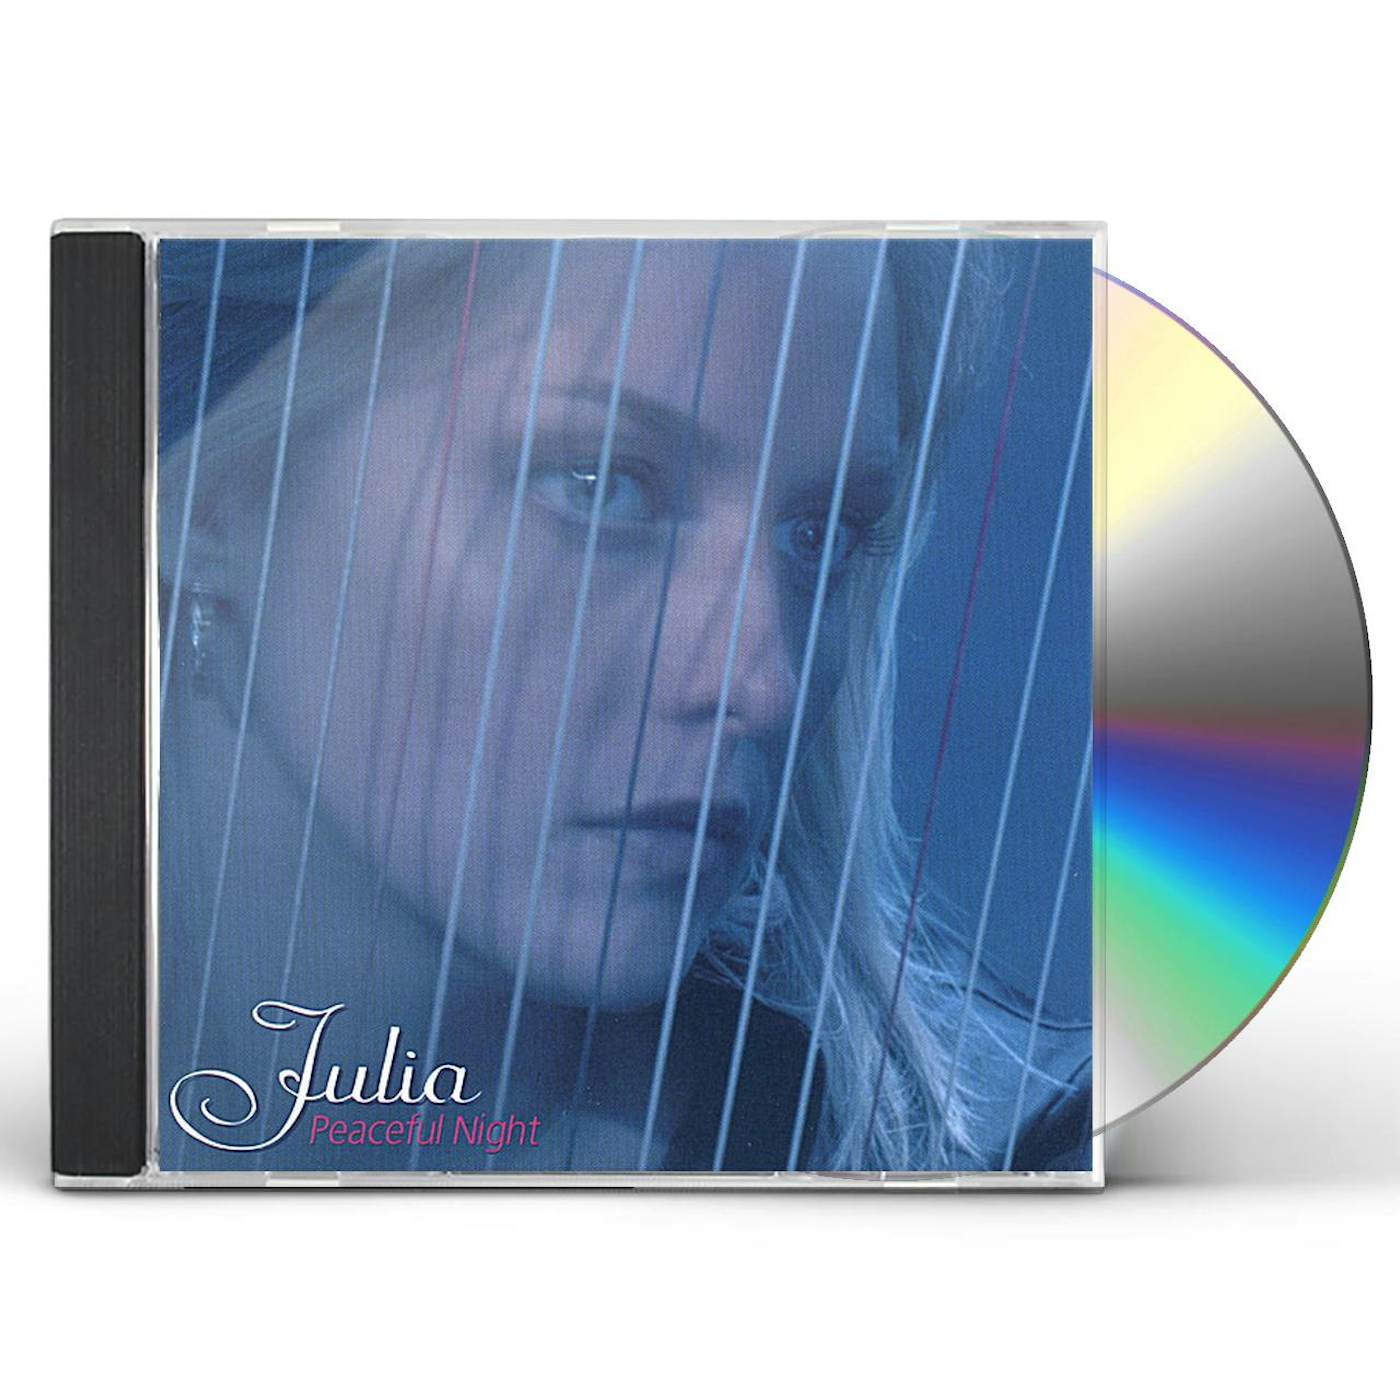 Julia PEACEFUL NIGHT CD